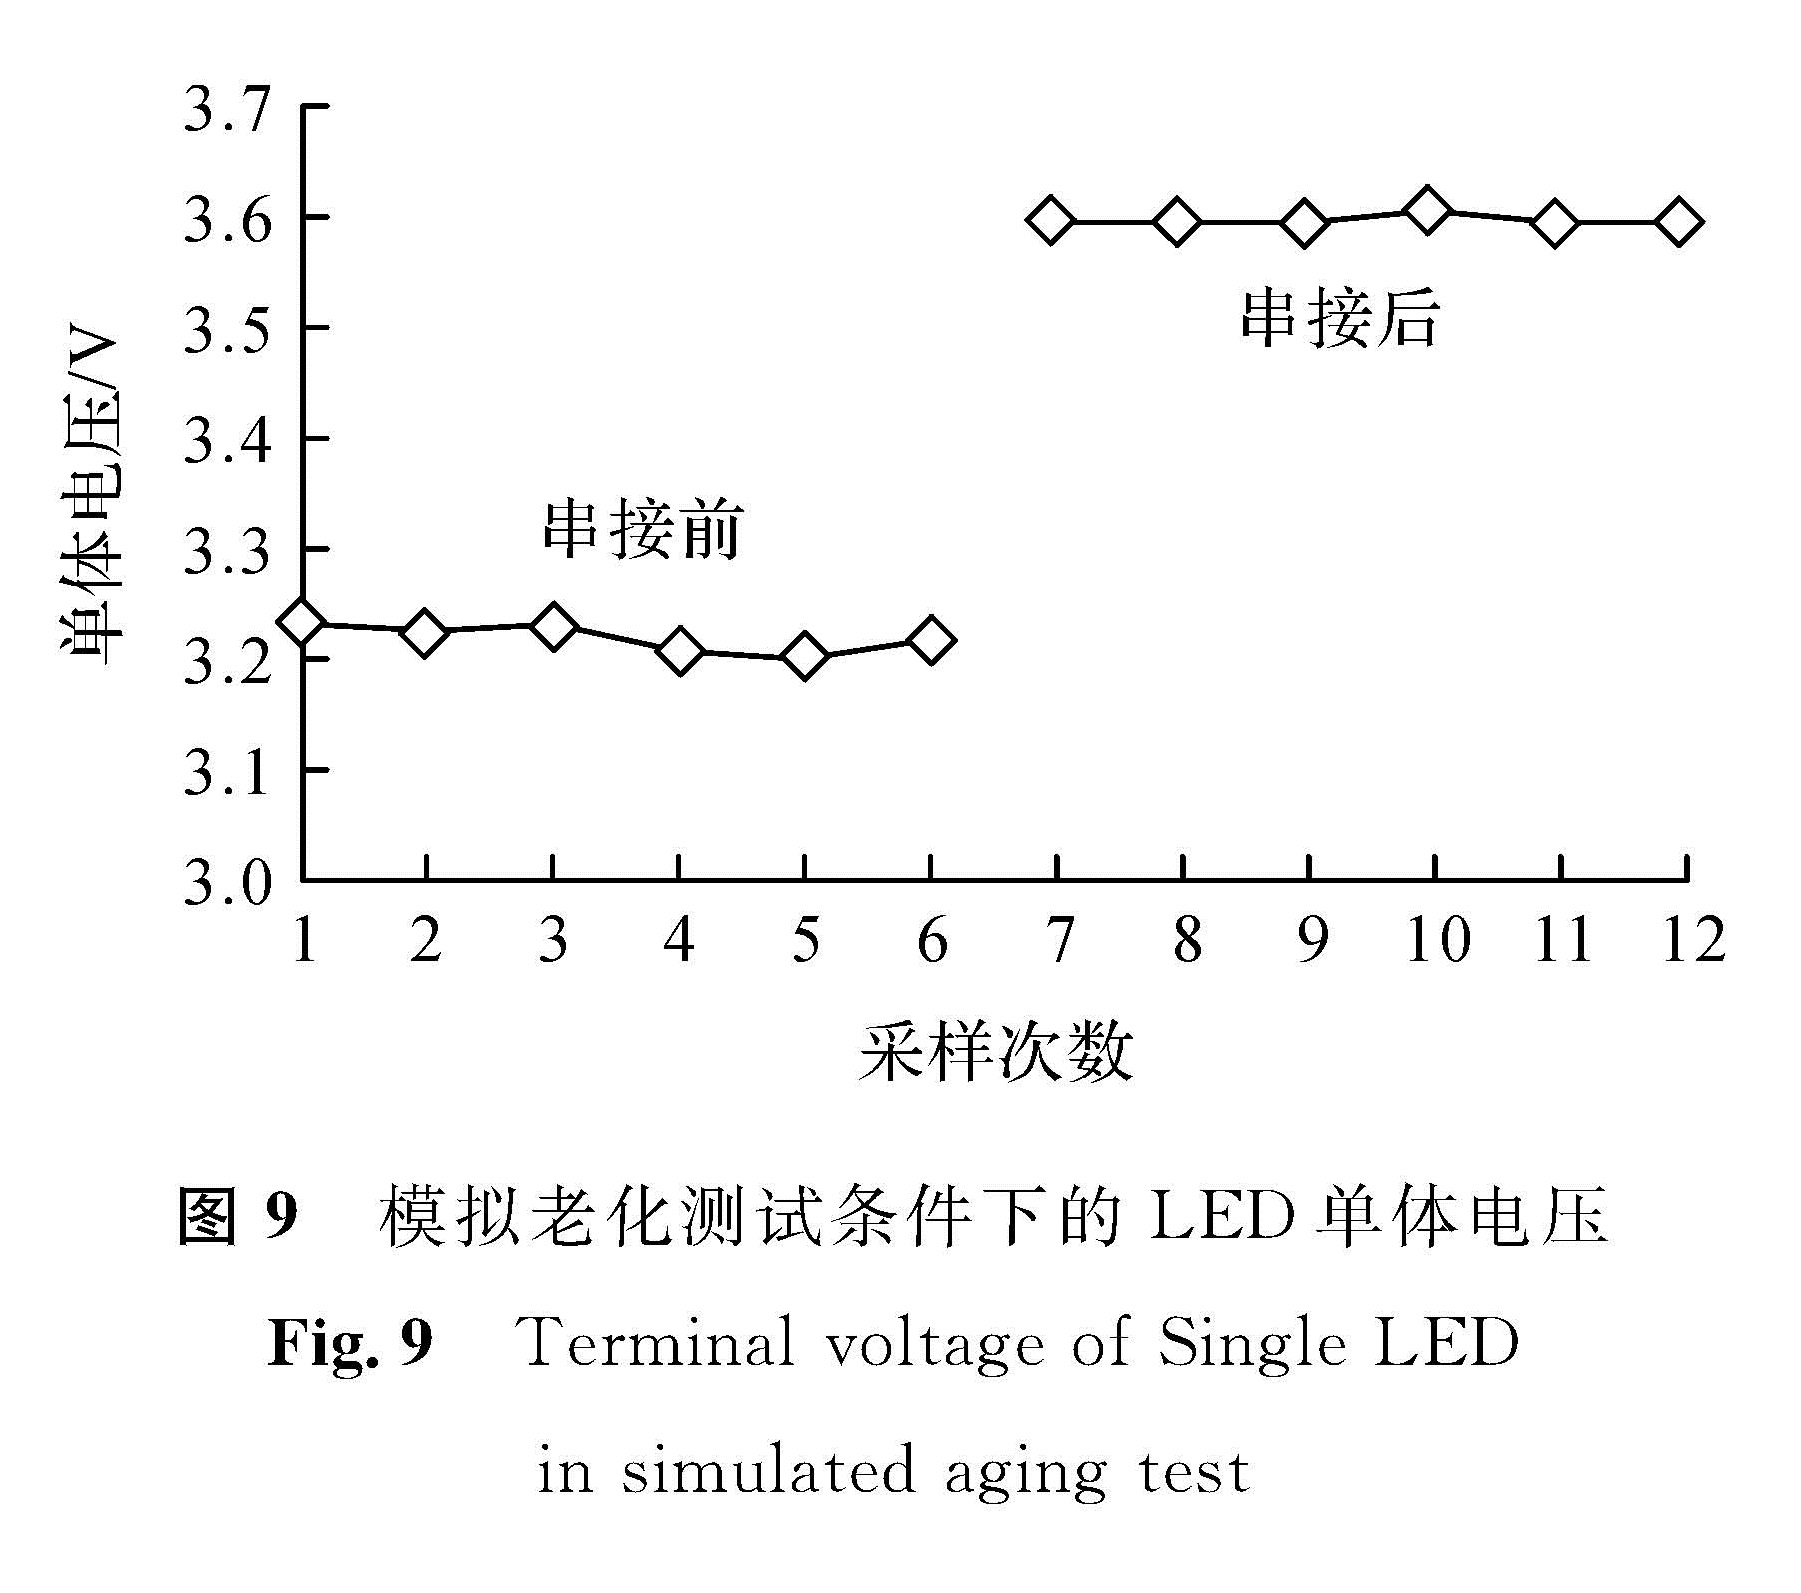 图9 模拟老化测试条件下的LED单体电压<br/>Fig.9 Terminal voltage of Single LED in simulated aging test